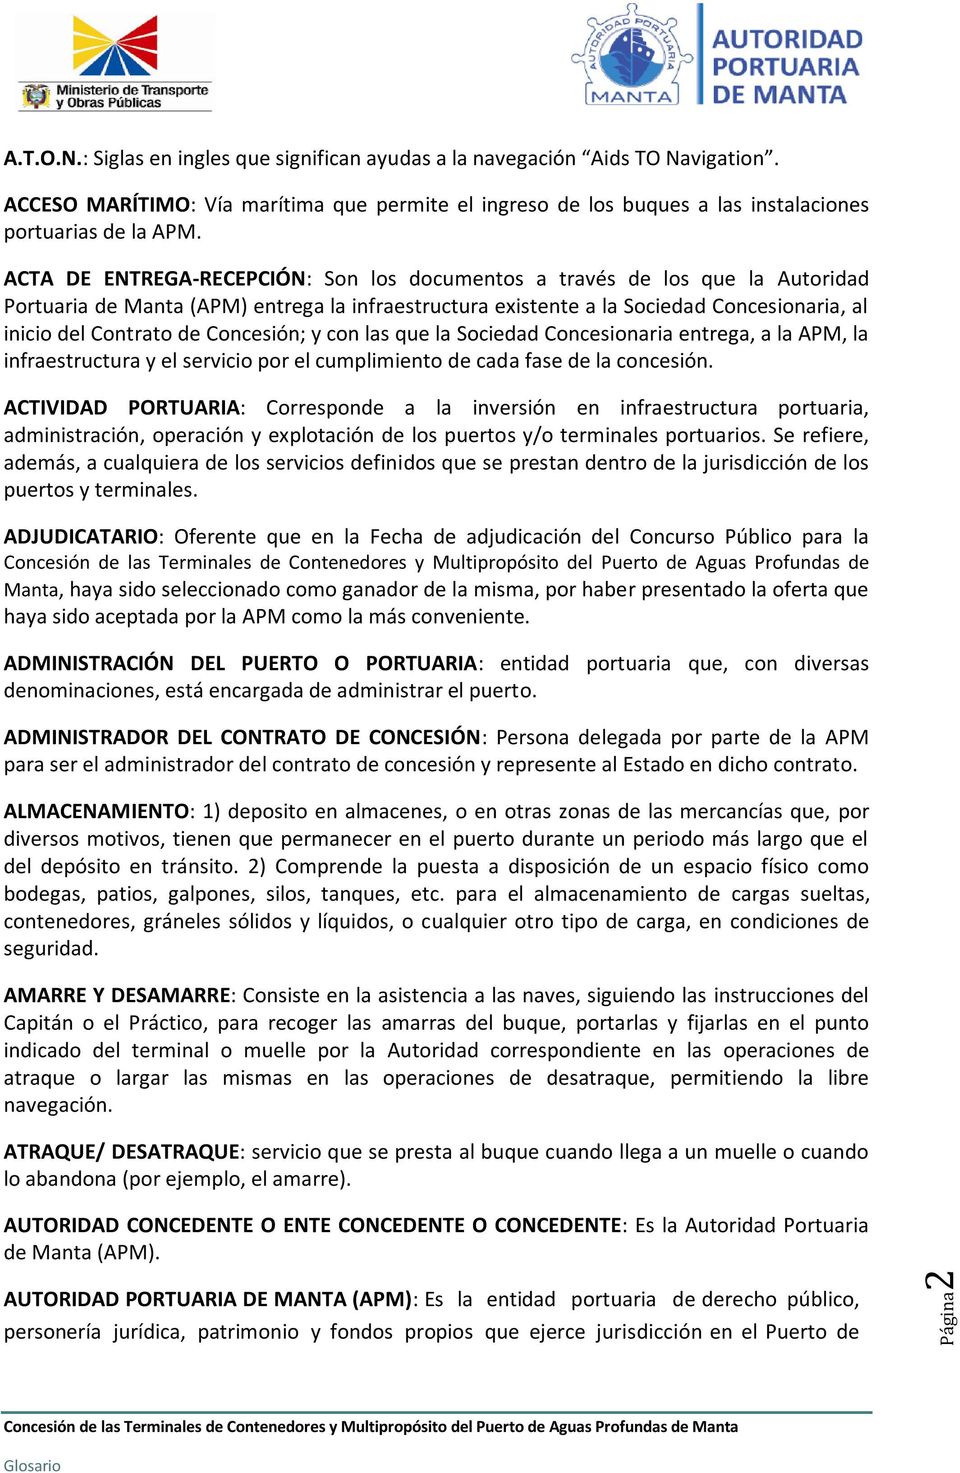 ACTA DE ENTREGA-RECEPCIÓN: Son los documentos a través de los que la Autoridad Portuaria de Manta (APM) entrega la infraestructura existente a la Sociedad Concesionaria, al inicio del Contrato de